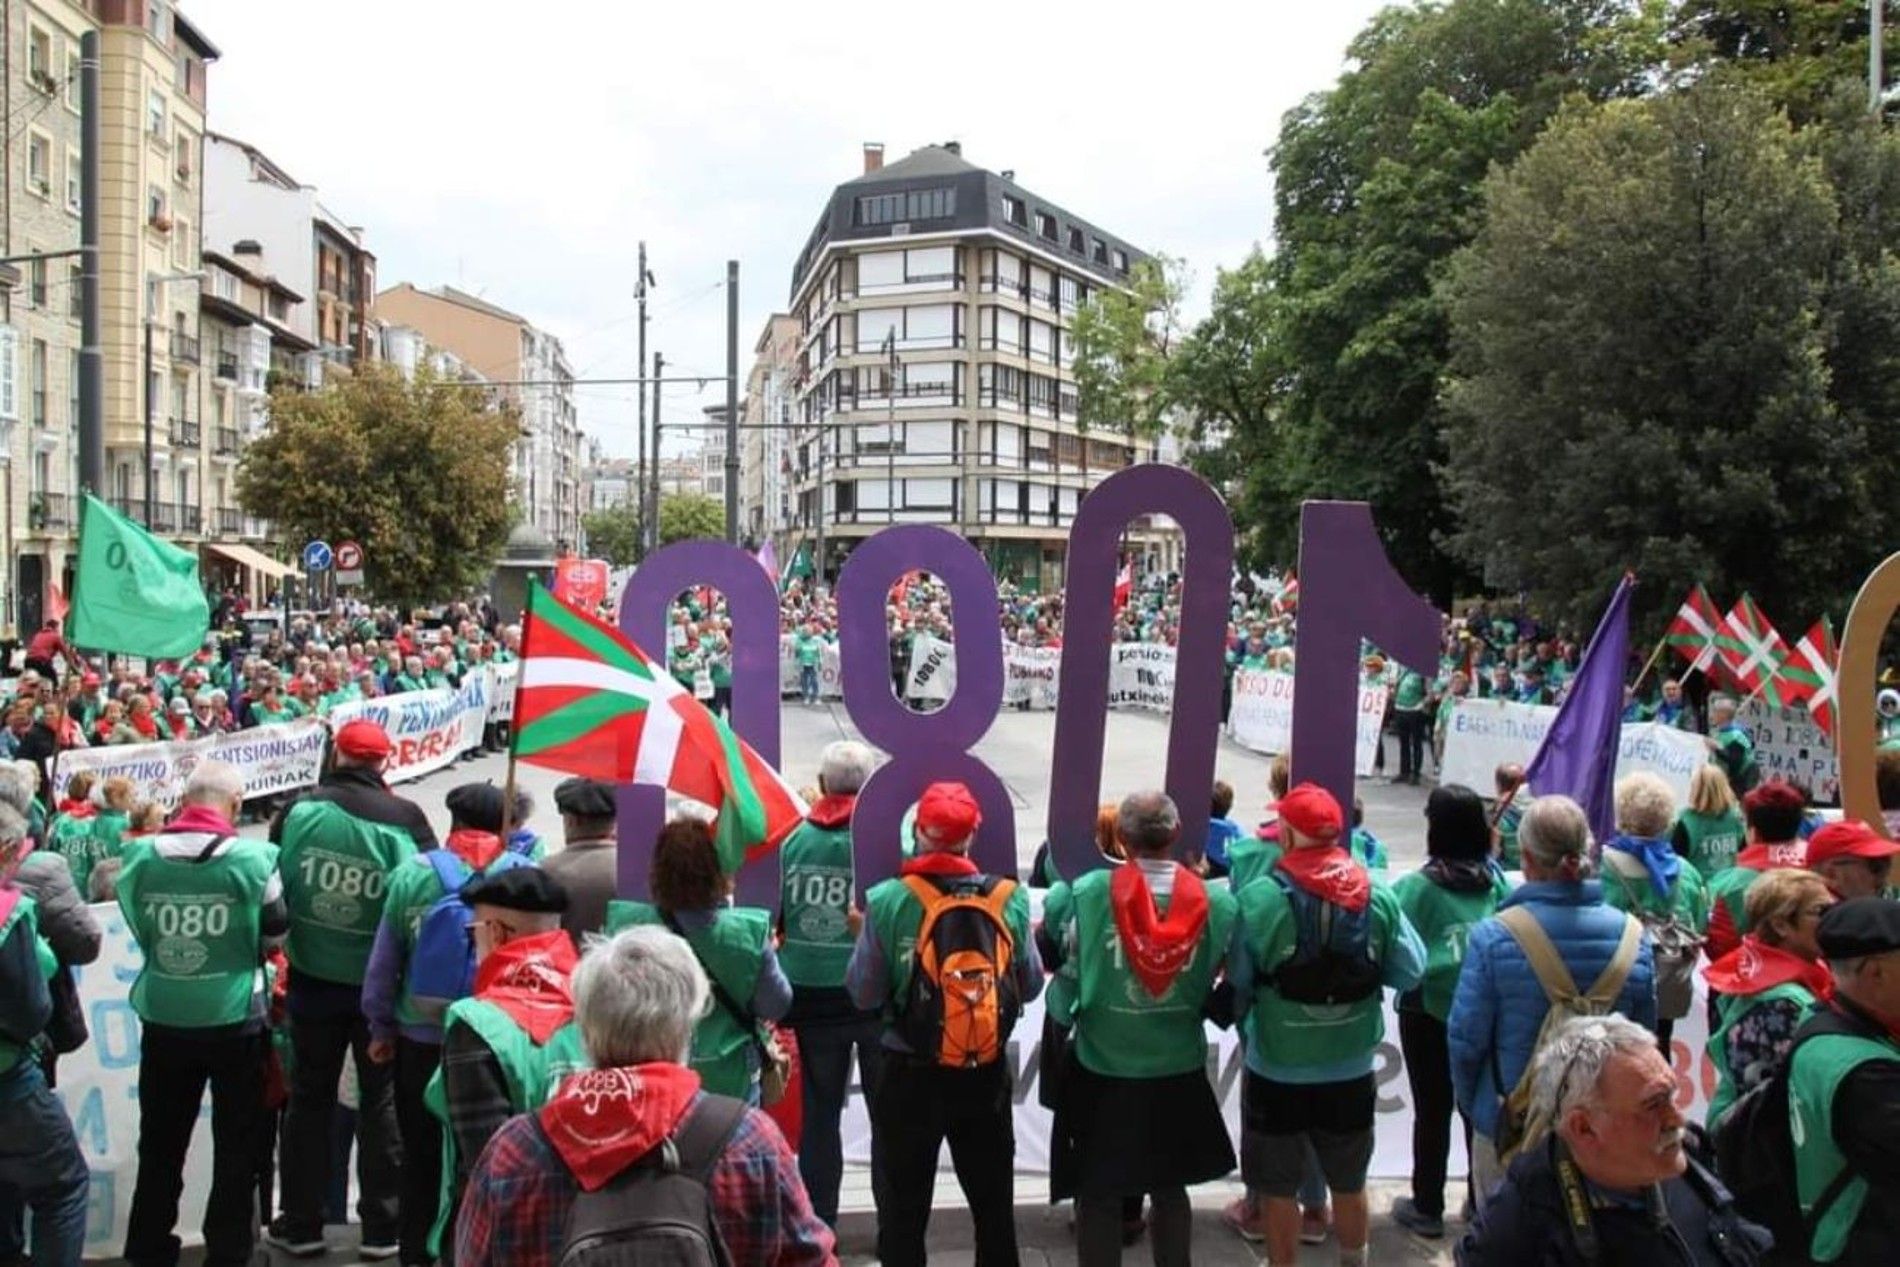 Los pensionistas vascos se manifiestan en Bilbao al grito de "pensión mínima de 1.080 euros"